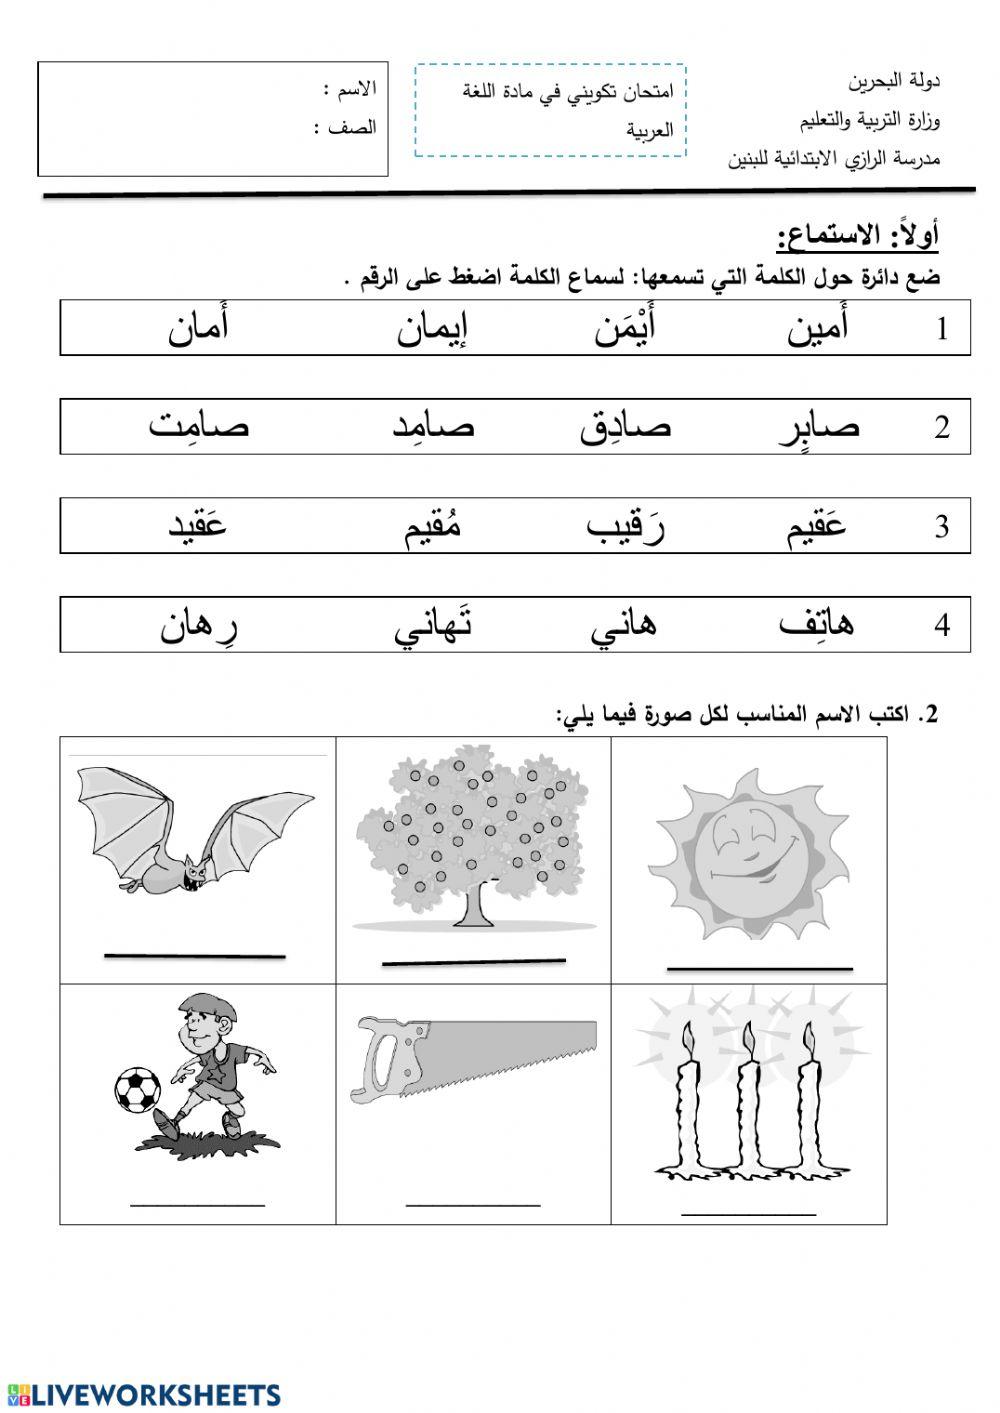 التطبيق رقم 2 في اللغة العربية